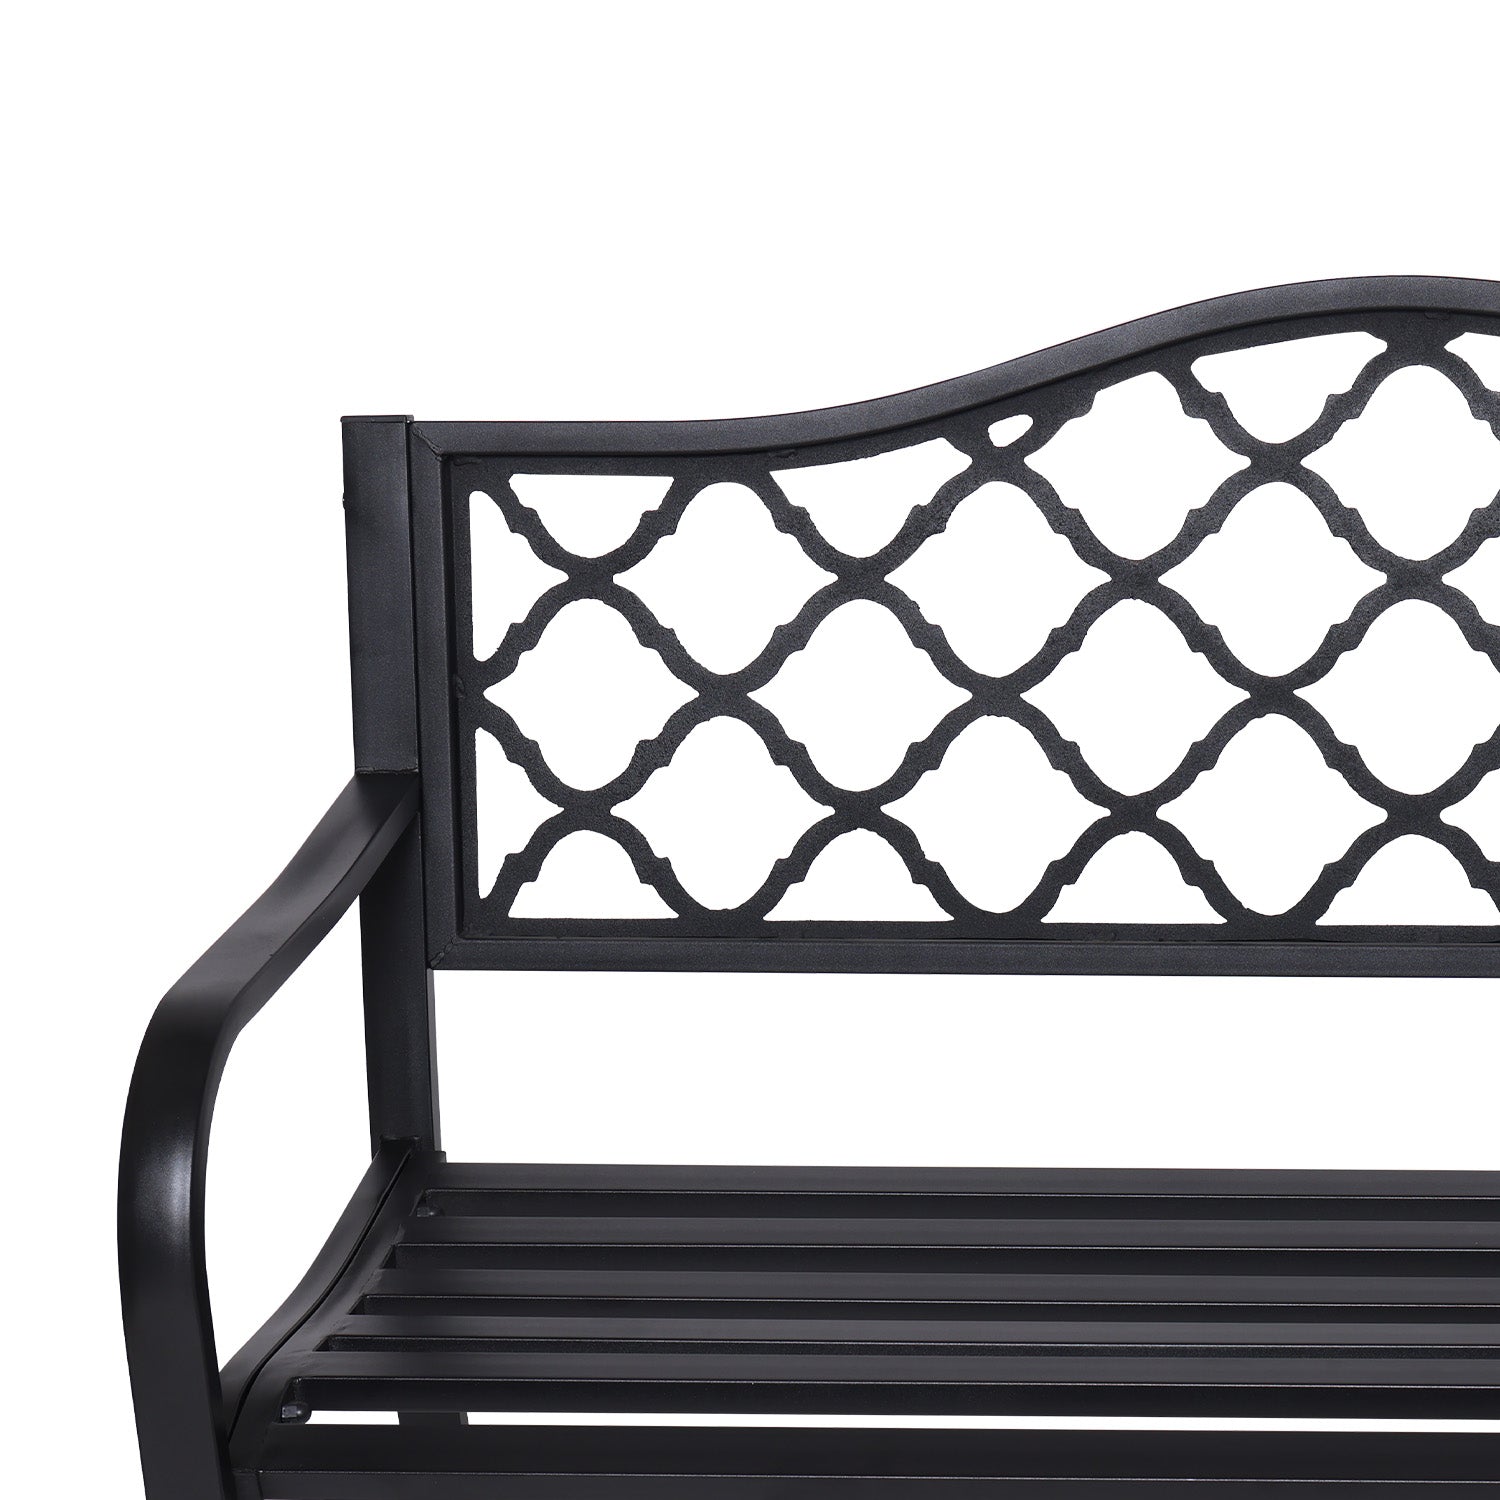 Outdoor Bench Seat Wallaroo Steel Metal Garden Black - Elegant